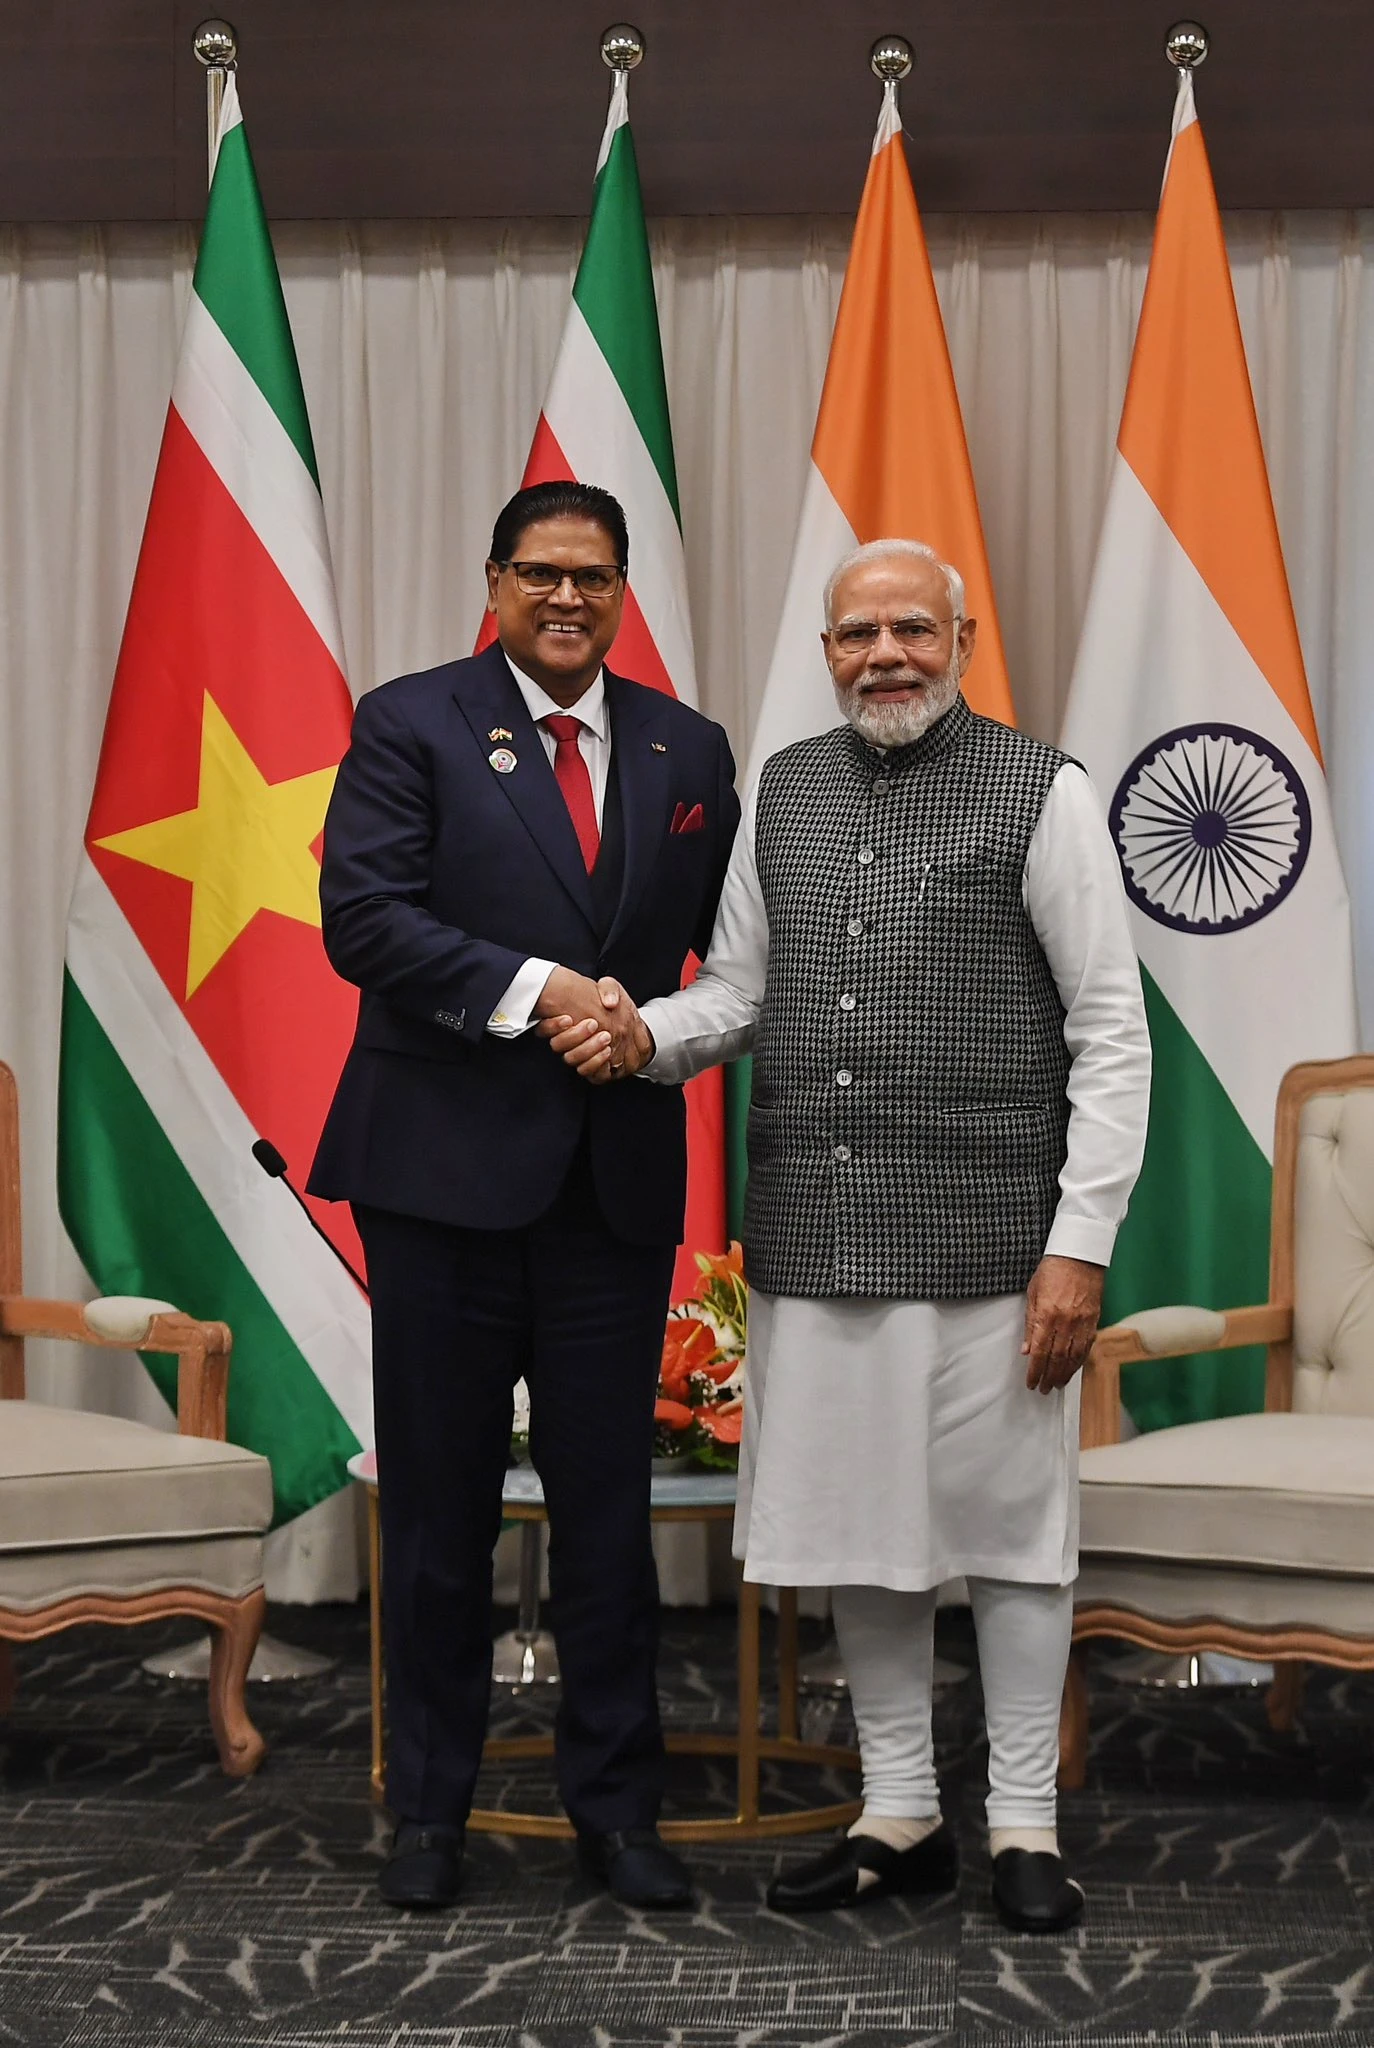 پرواسی بھارتیہ دیوس کے موقع پر سورینام کے صدر کے ساتھ وزیر اعظم کی ملاقات